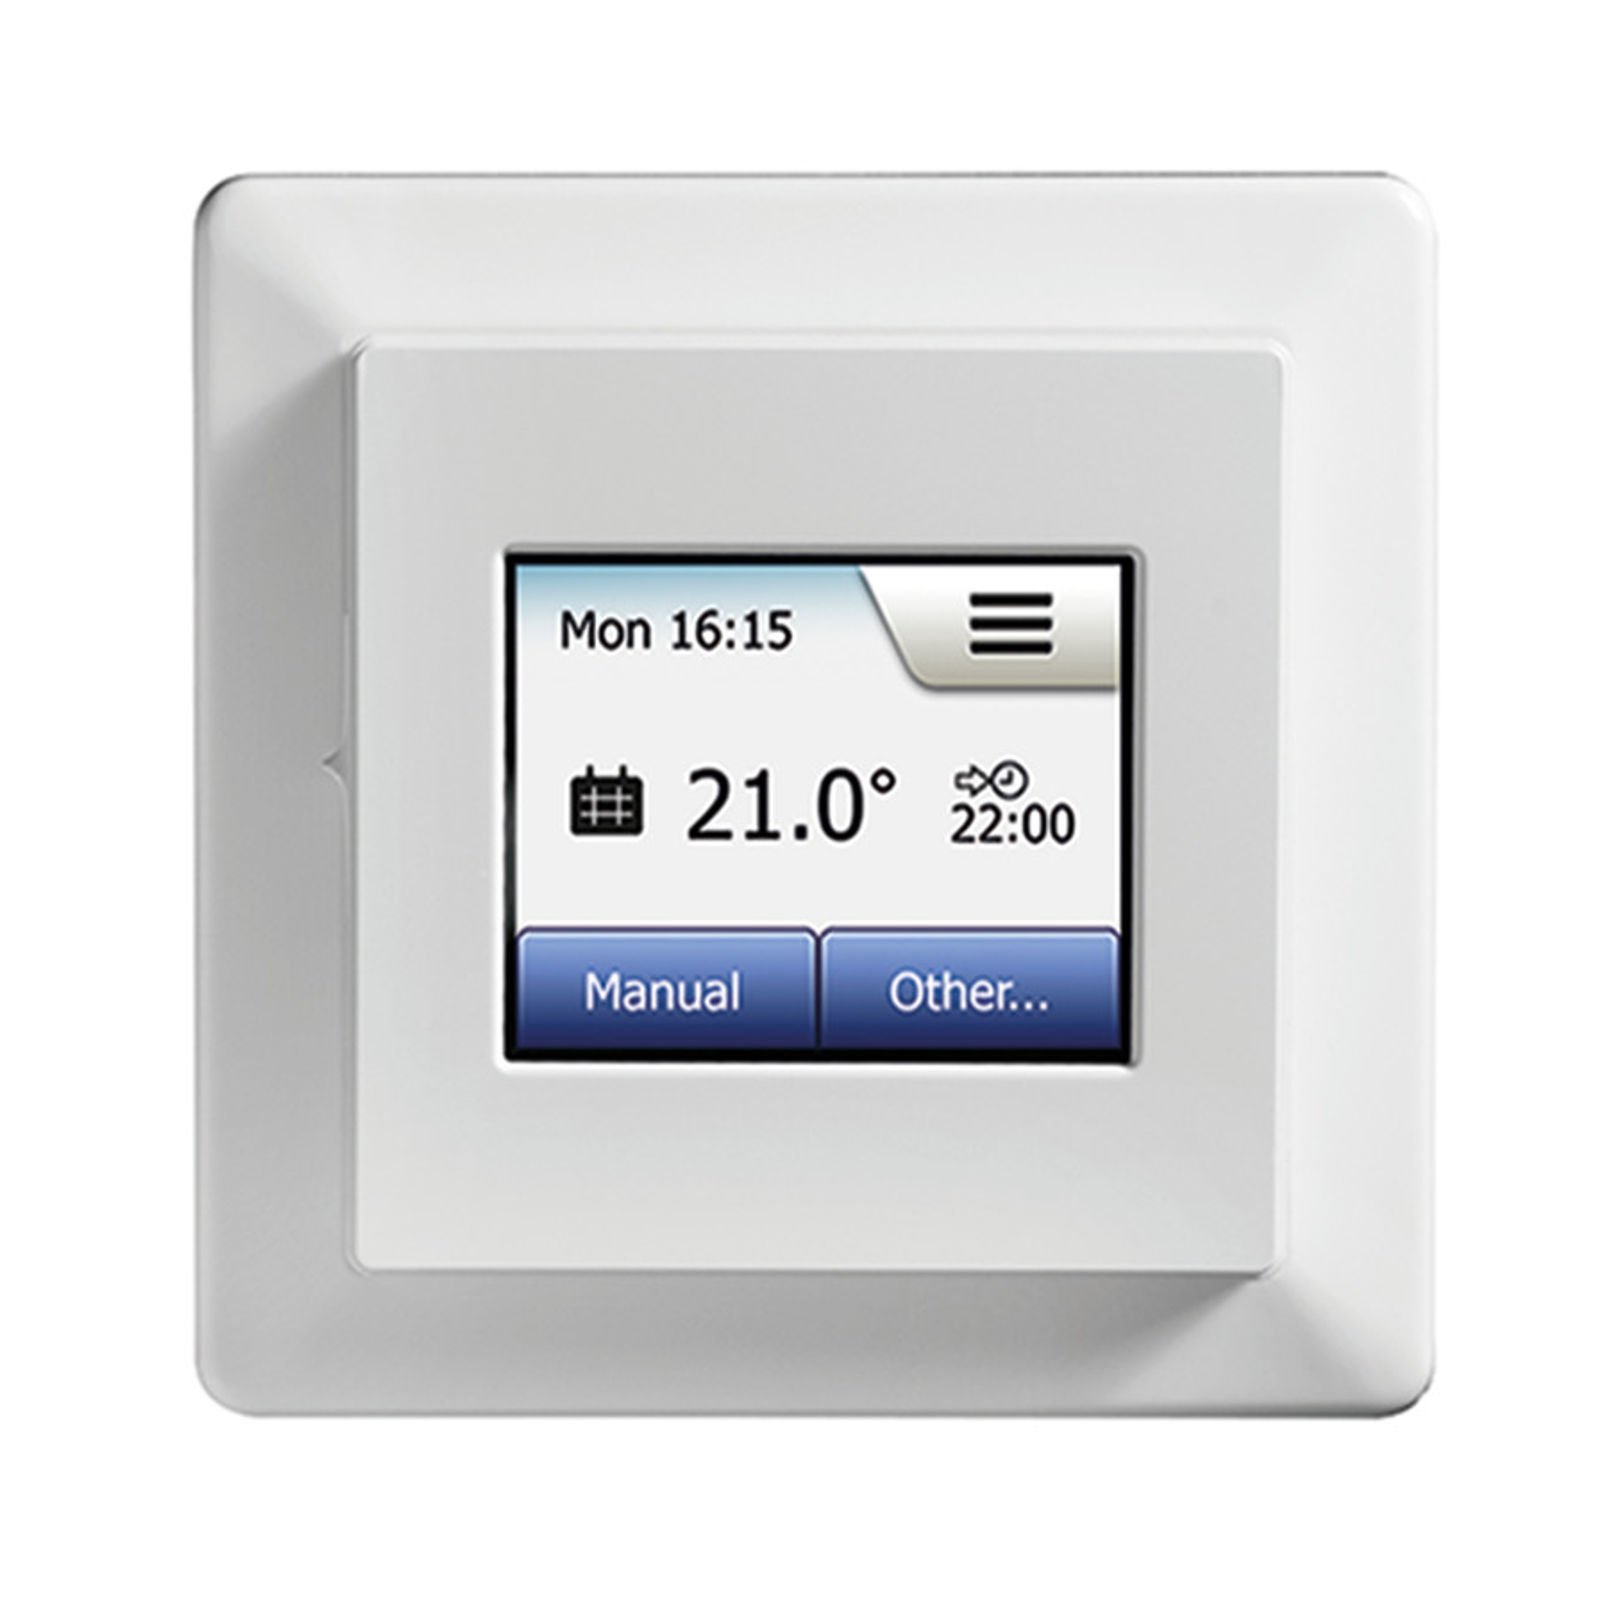 WLAN Thermostat mit ext. Sensor für elektrische Flächenheizung